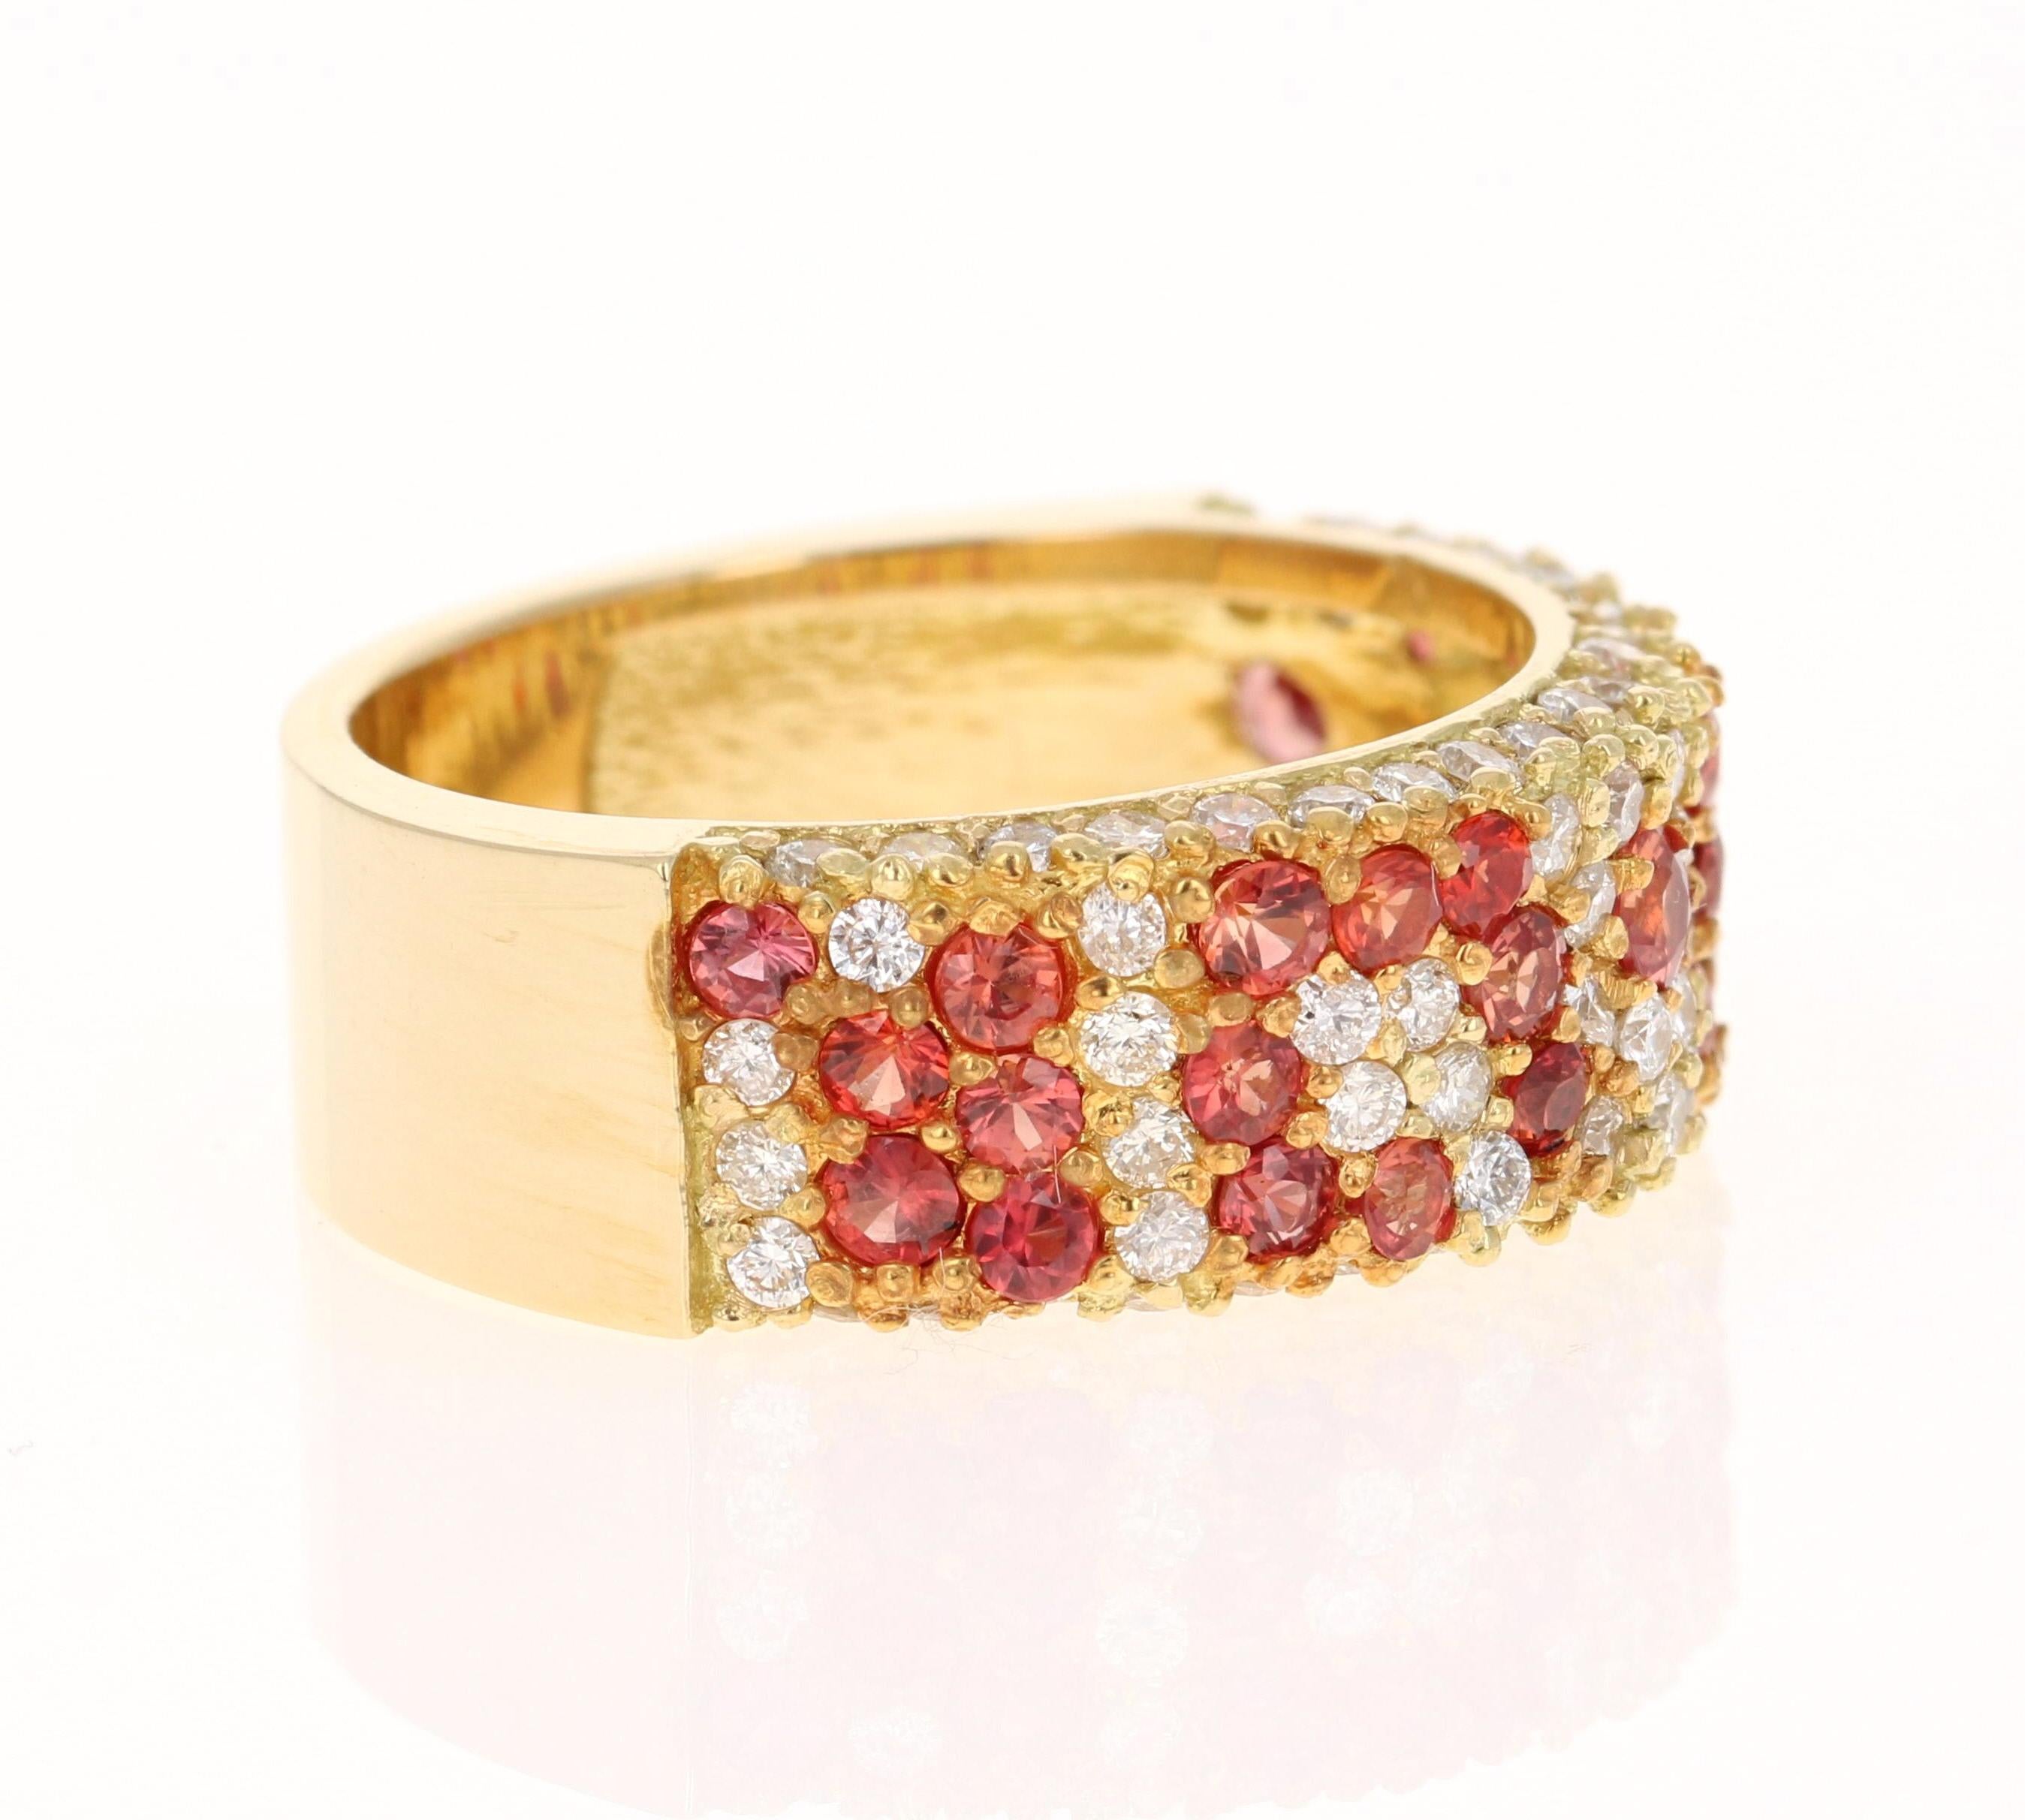 Dieses Band hat 31 rote Saphire mit einem Gewicht von 1,30 Karat und 81 Diamanten im Rundschliff mit einem Gewicht von 0,99 Karat. (Reinheit: SI, Farbe: F) Das Gesamtkaratgewicht des Rings beträgt 2.29 Karat. 

Der Ring ist aus 18 Karat Gelbgold